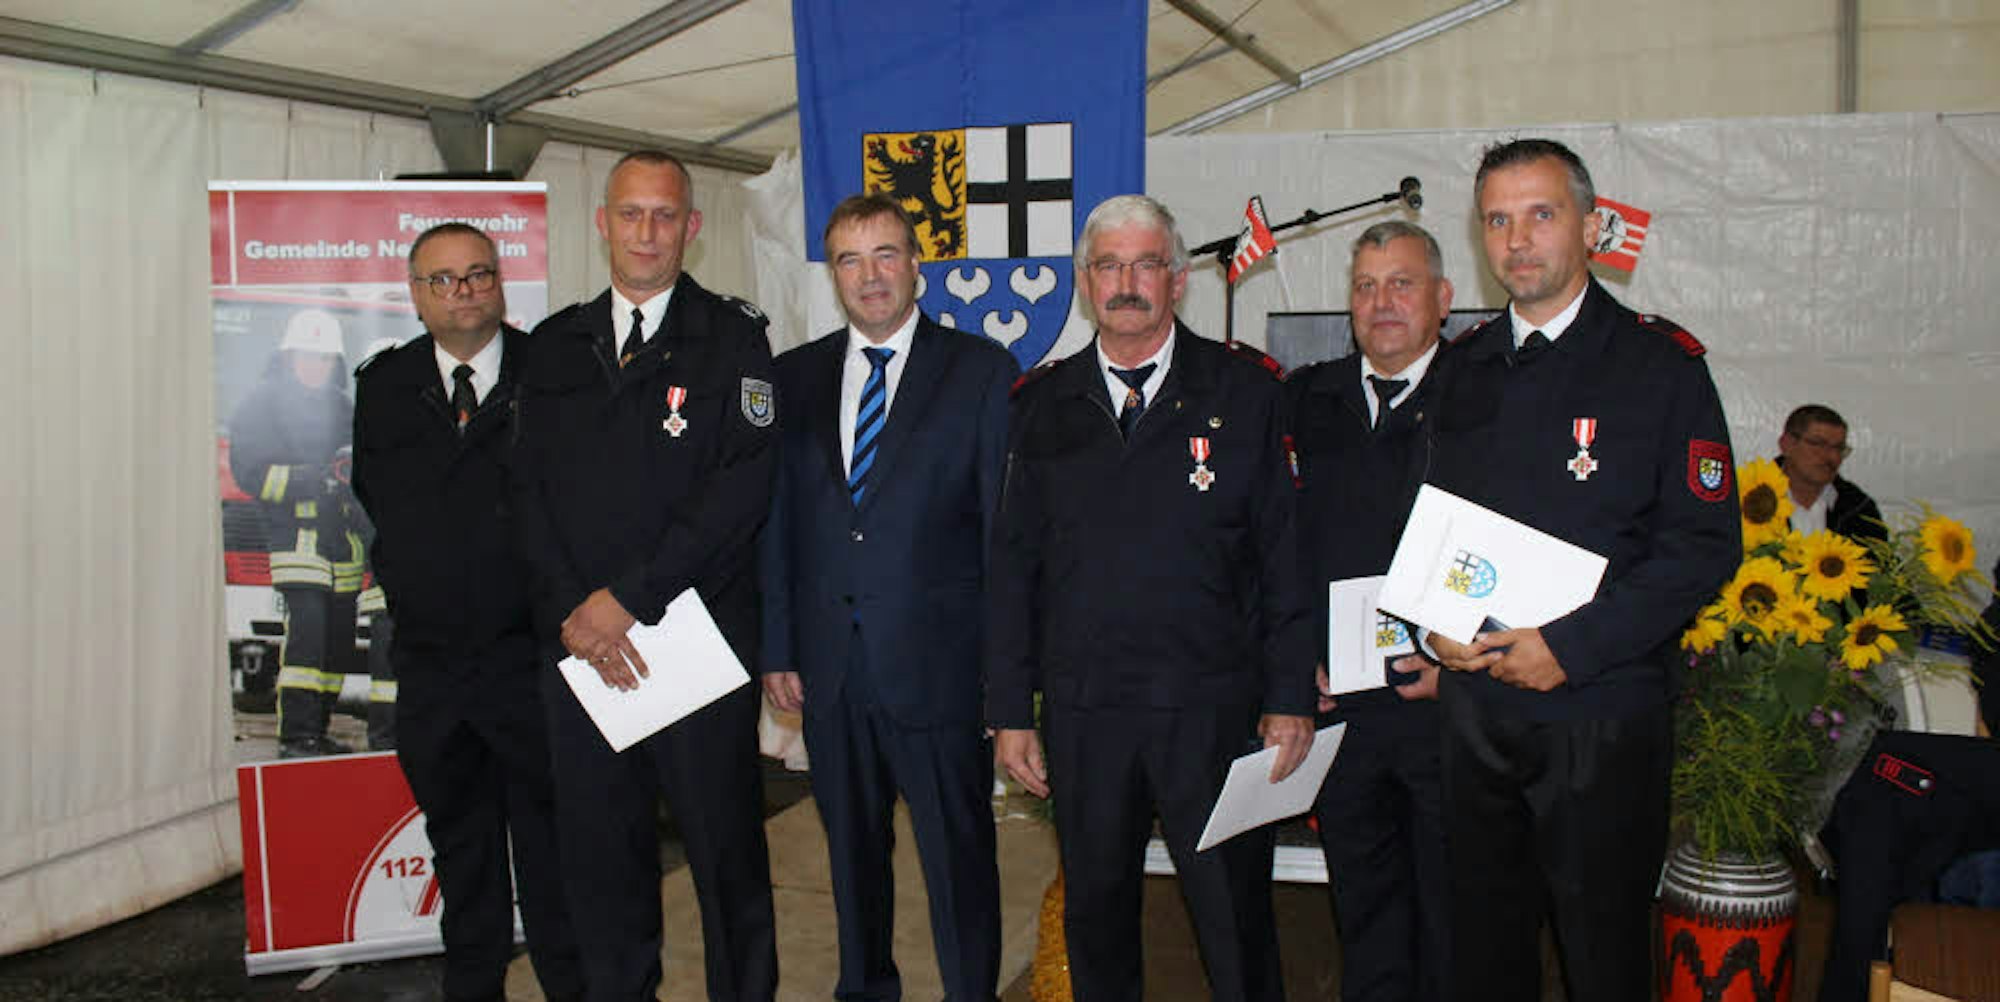 Verdiente Wehrleute wurden von Bürgermeister Wilfried Pracht (3.v.l.) für ihr Engagement geehrt.